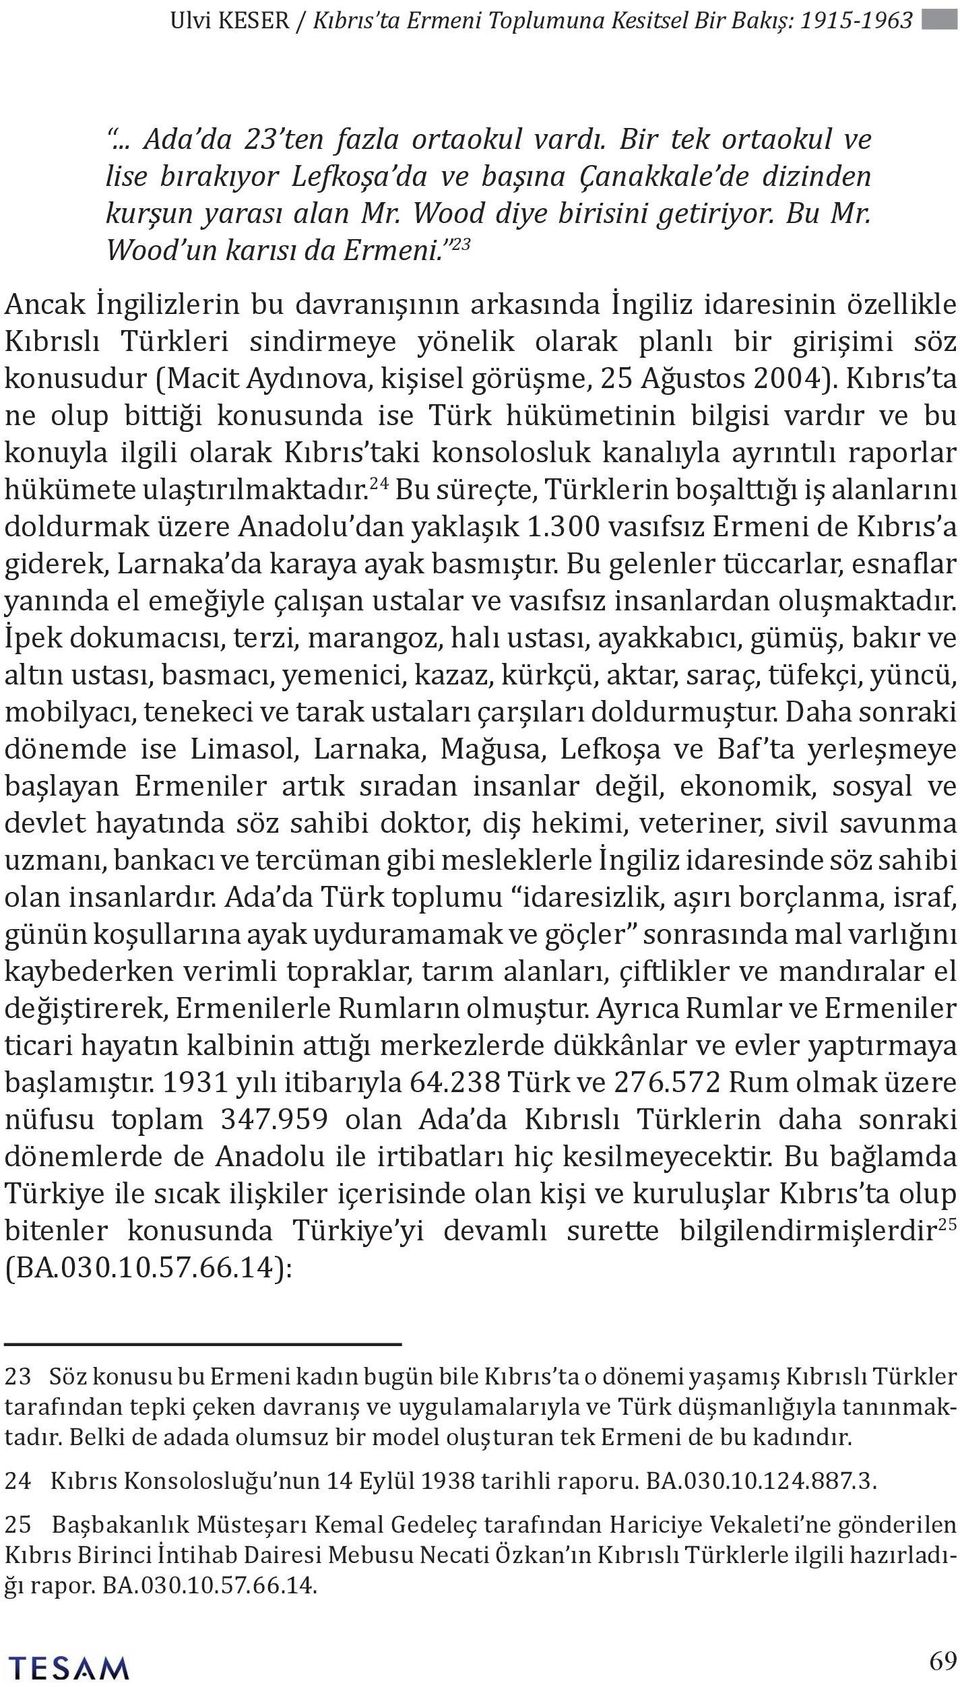 23 Ancak İngilizlerin bu davranışının arkasında İngiliz idaresinin özellikle Kıbrıslı Türkleri sindirmeye yönelik olarak planlı bir girişimi söz konusudur (Macit Aydınova, kişisel görüşme, 25 Ağustos